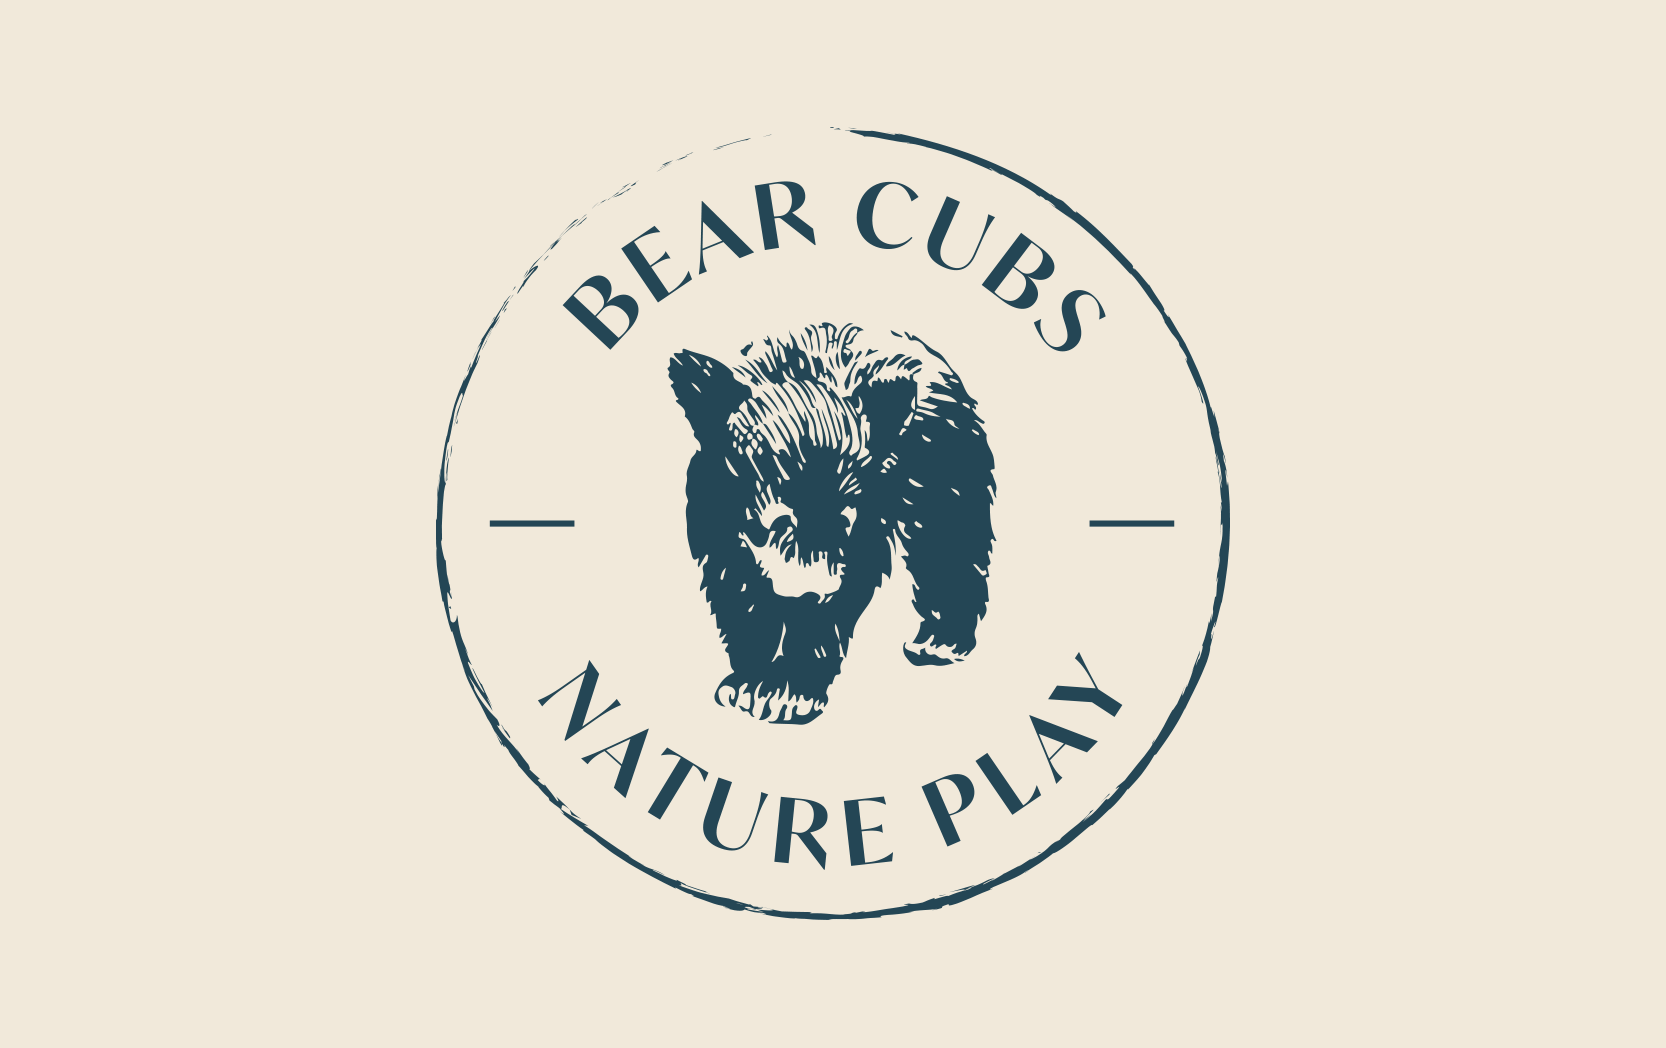 Bear Cubs Nature Play Logo